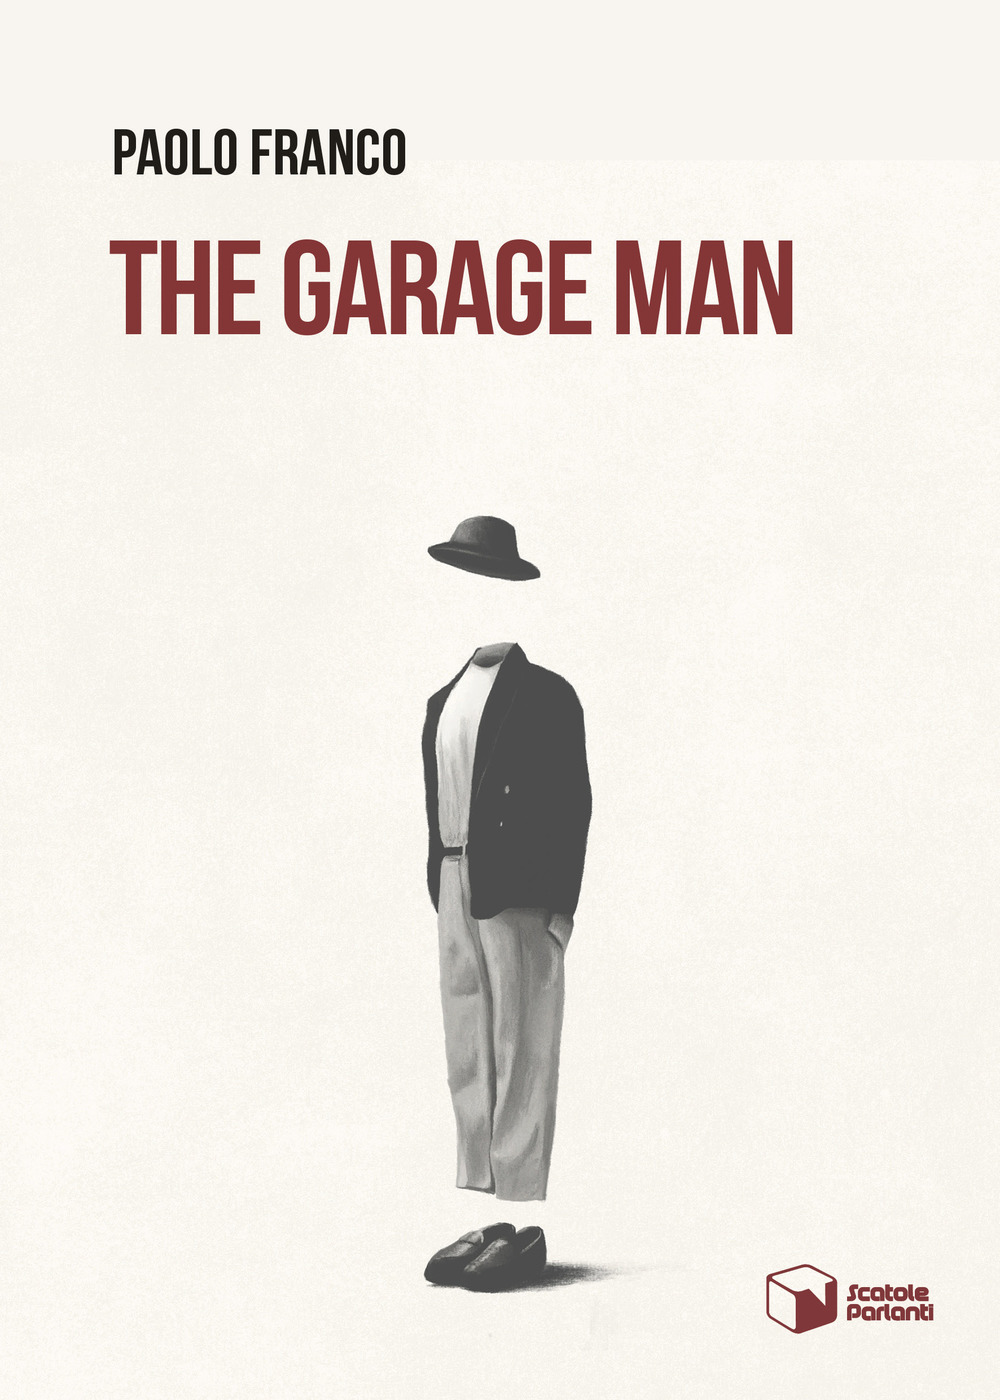 The garage man